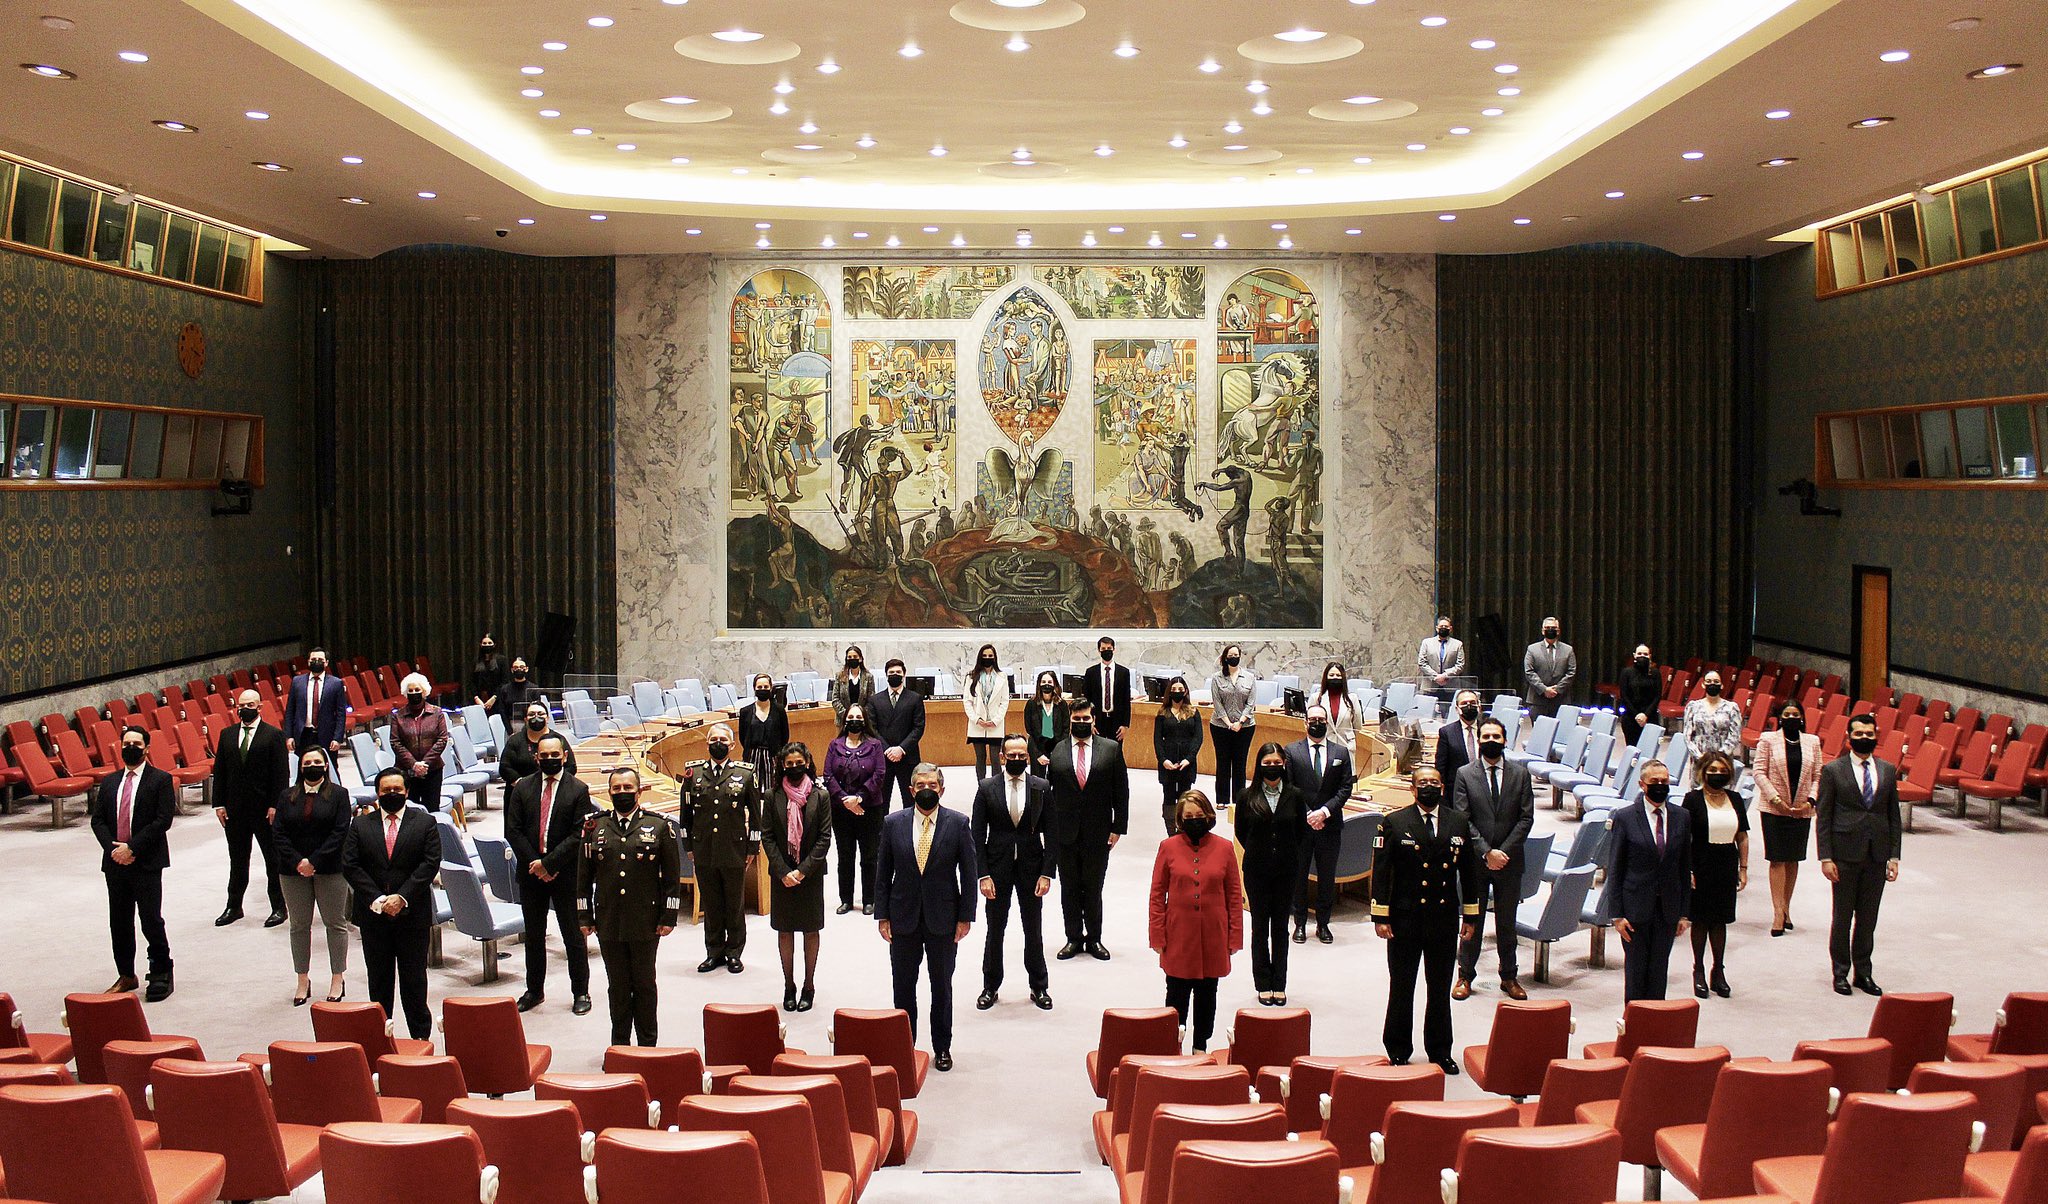 México presidirá el Consejo de Seguridad de la ONU para el bienio 2021-2022. (Foto: Twitter @MexOnu)